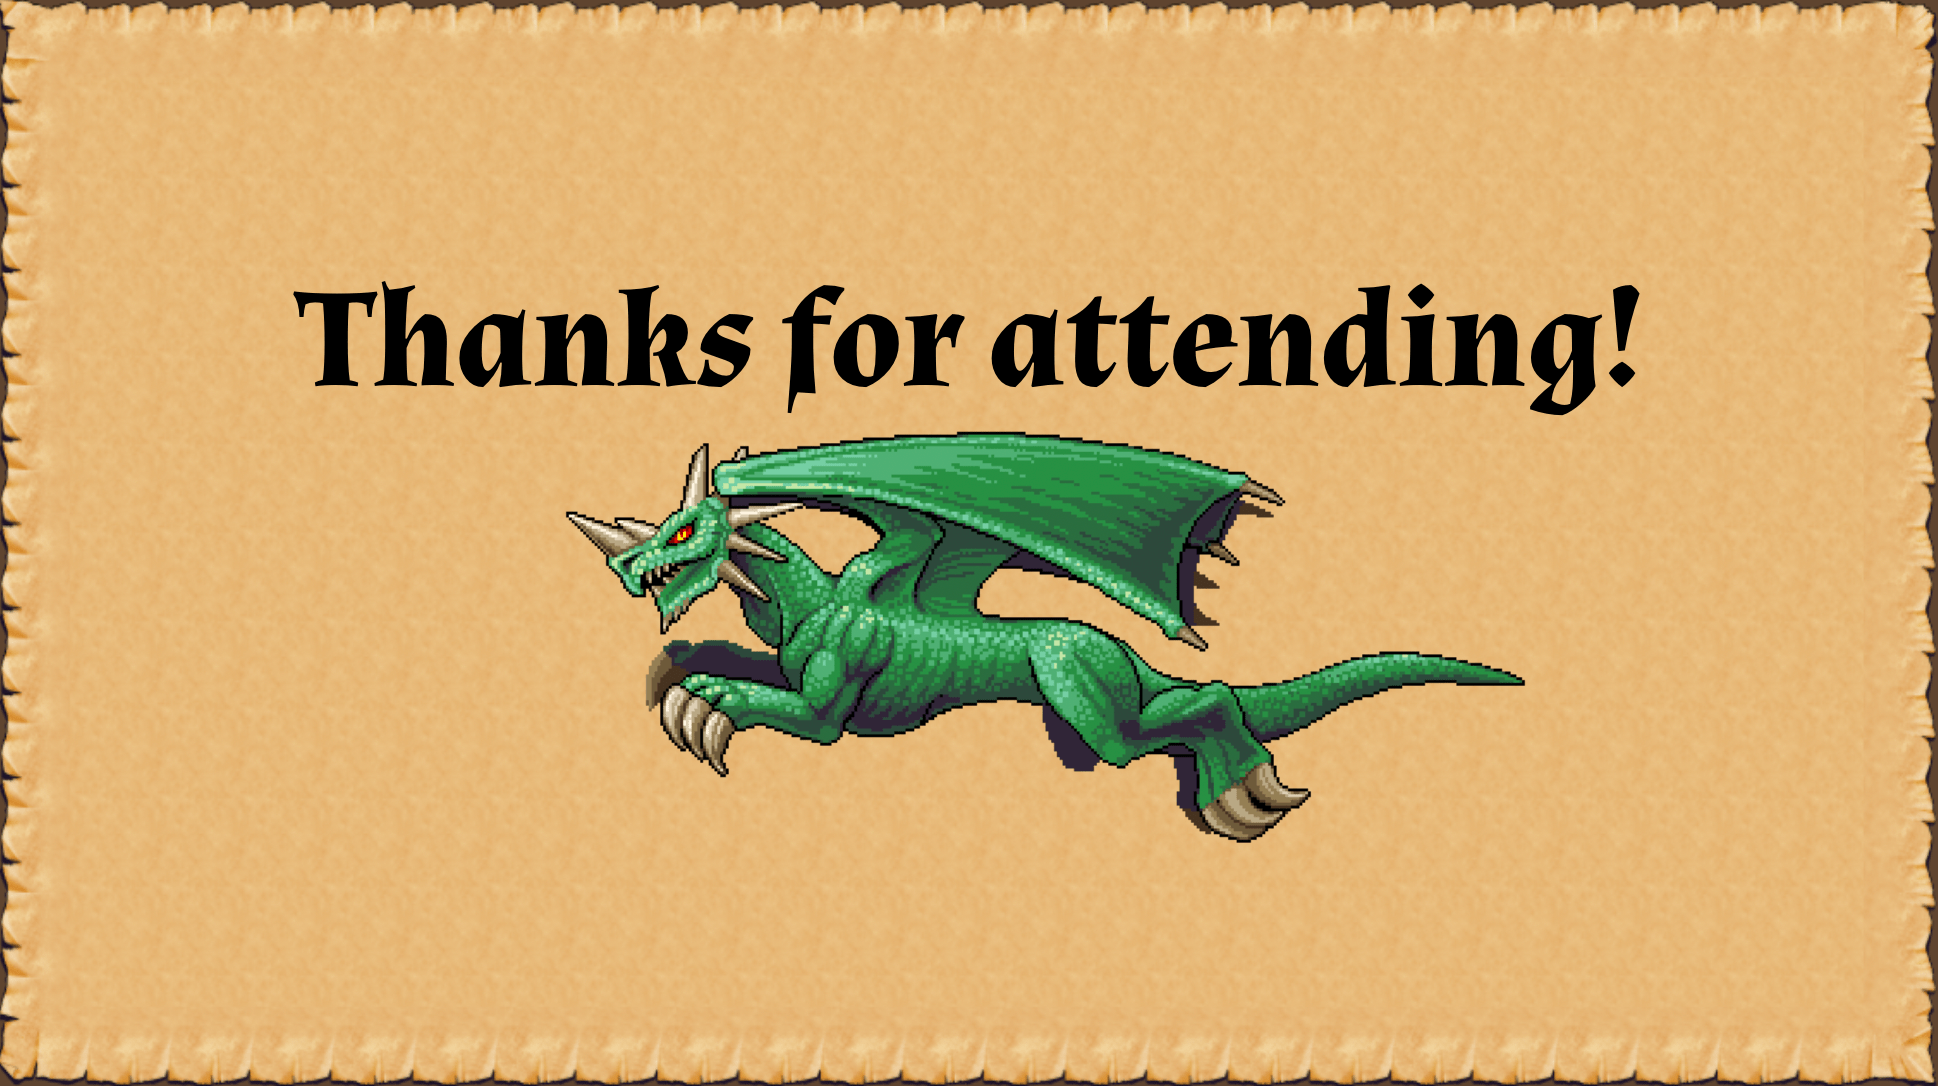 Thanks for attending!